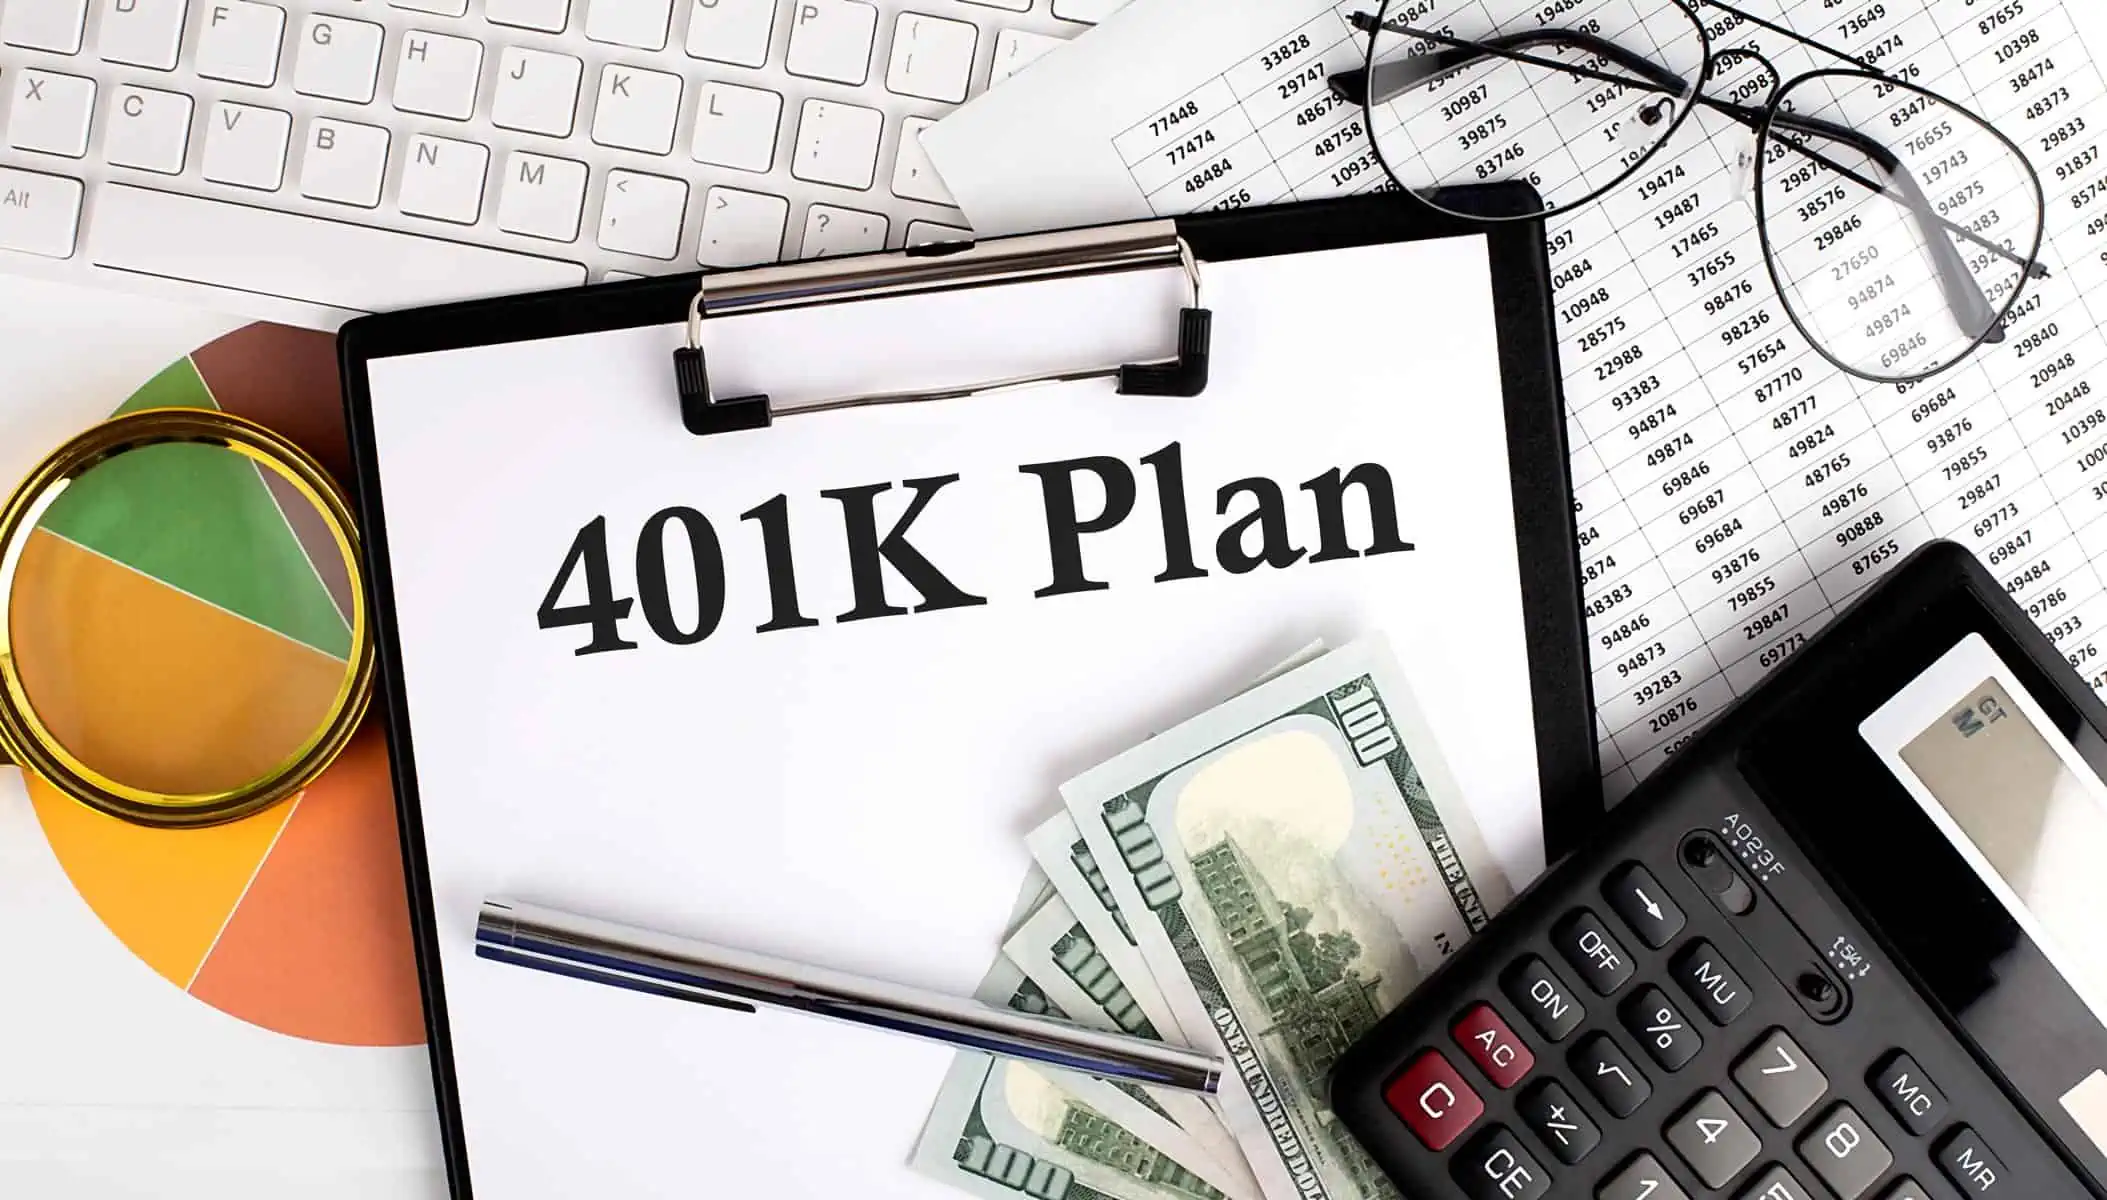 Ventajas y Desventajas del Plan 401k